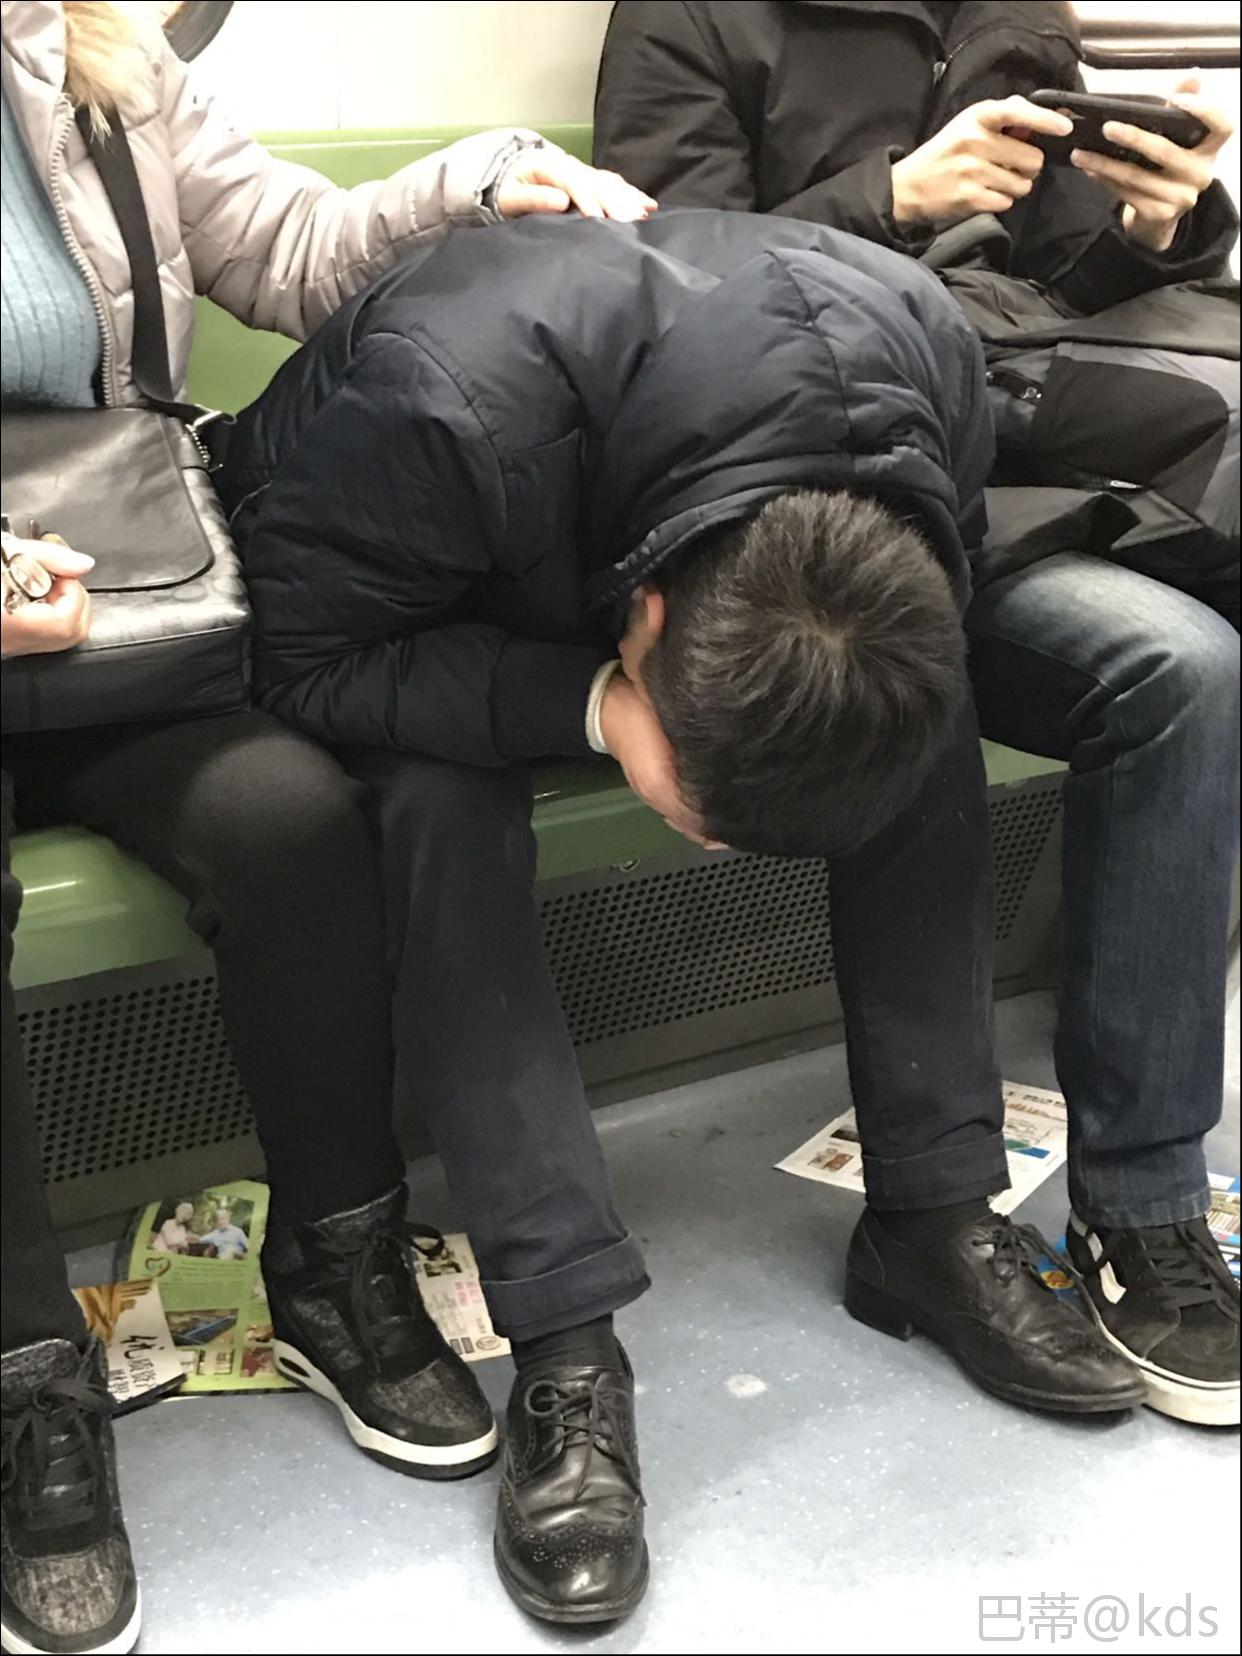 麻痹的喝多了上地铁也不知道拿个塑料袋,一边嚷嚷要吐了一边往地上吐